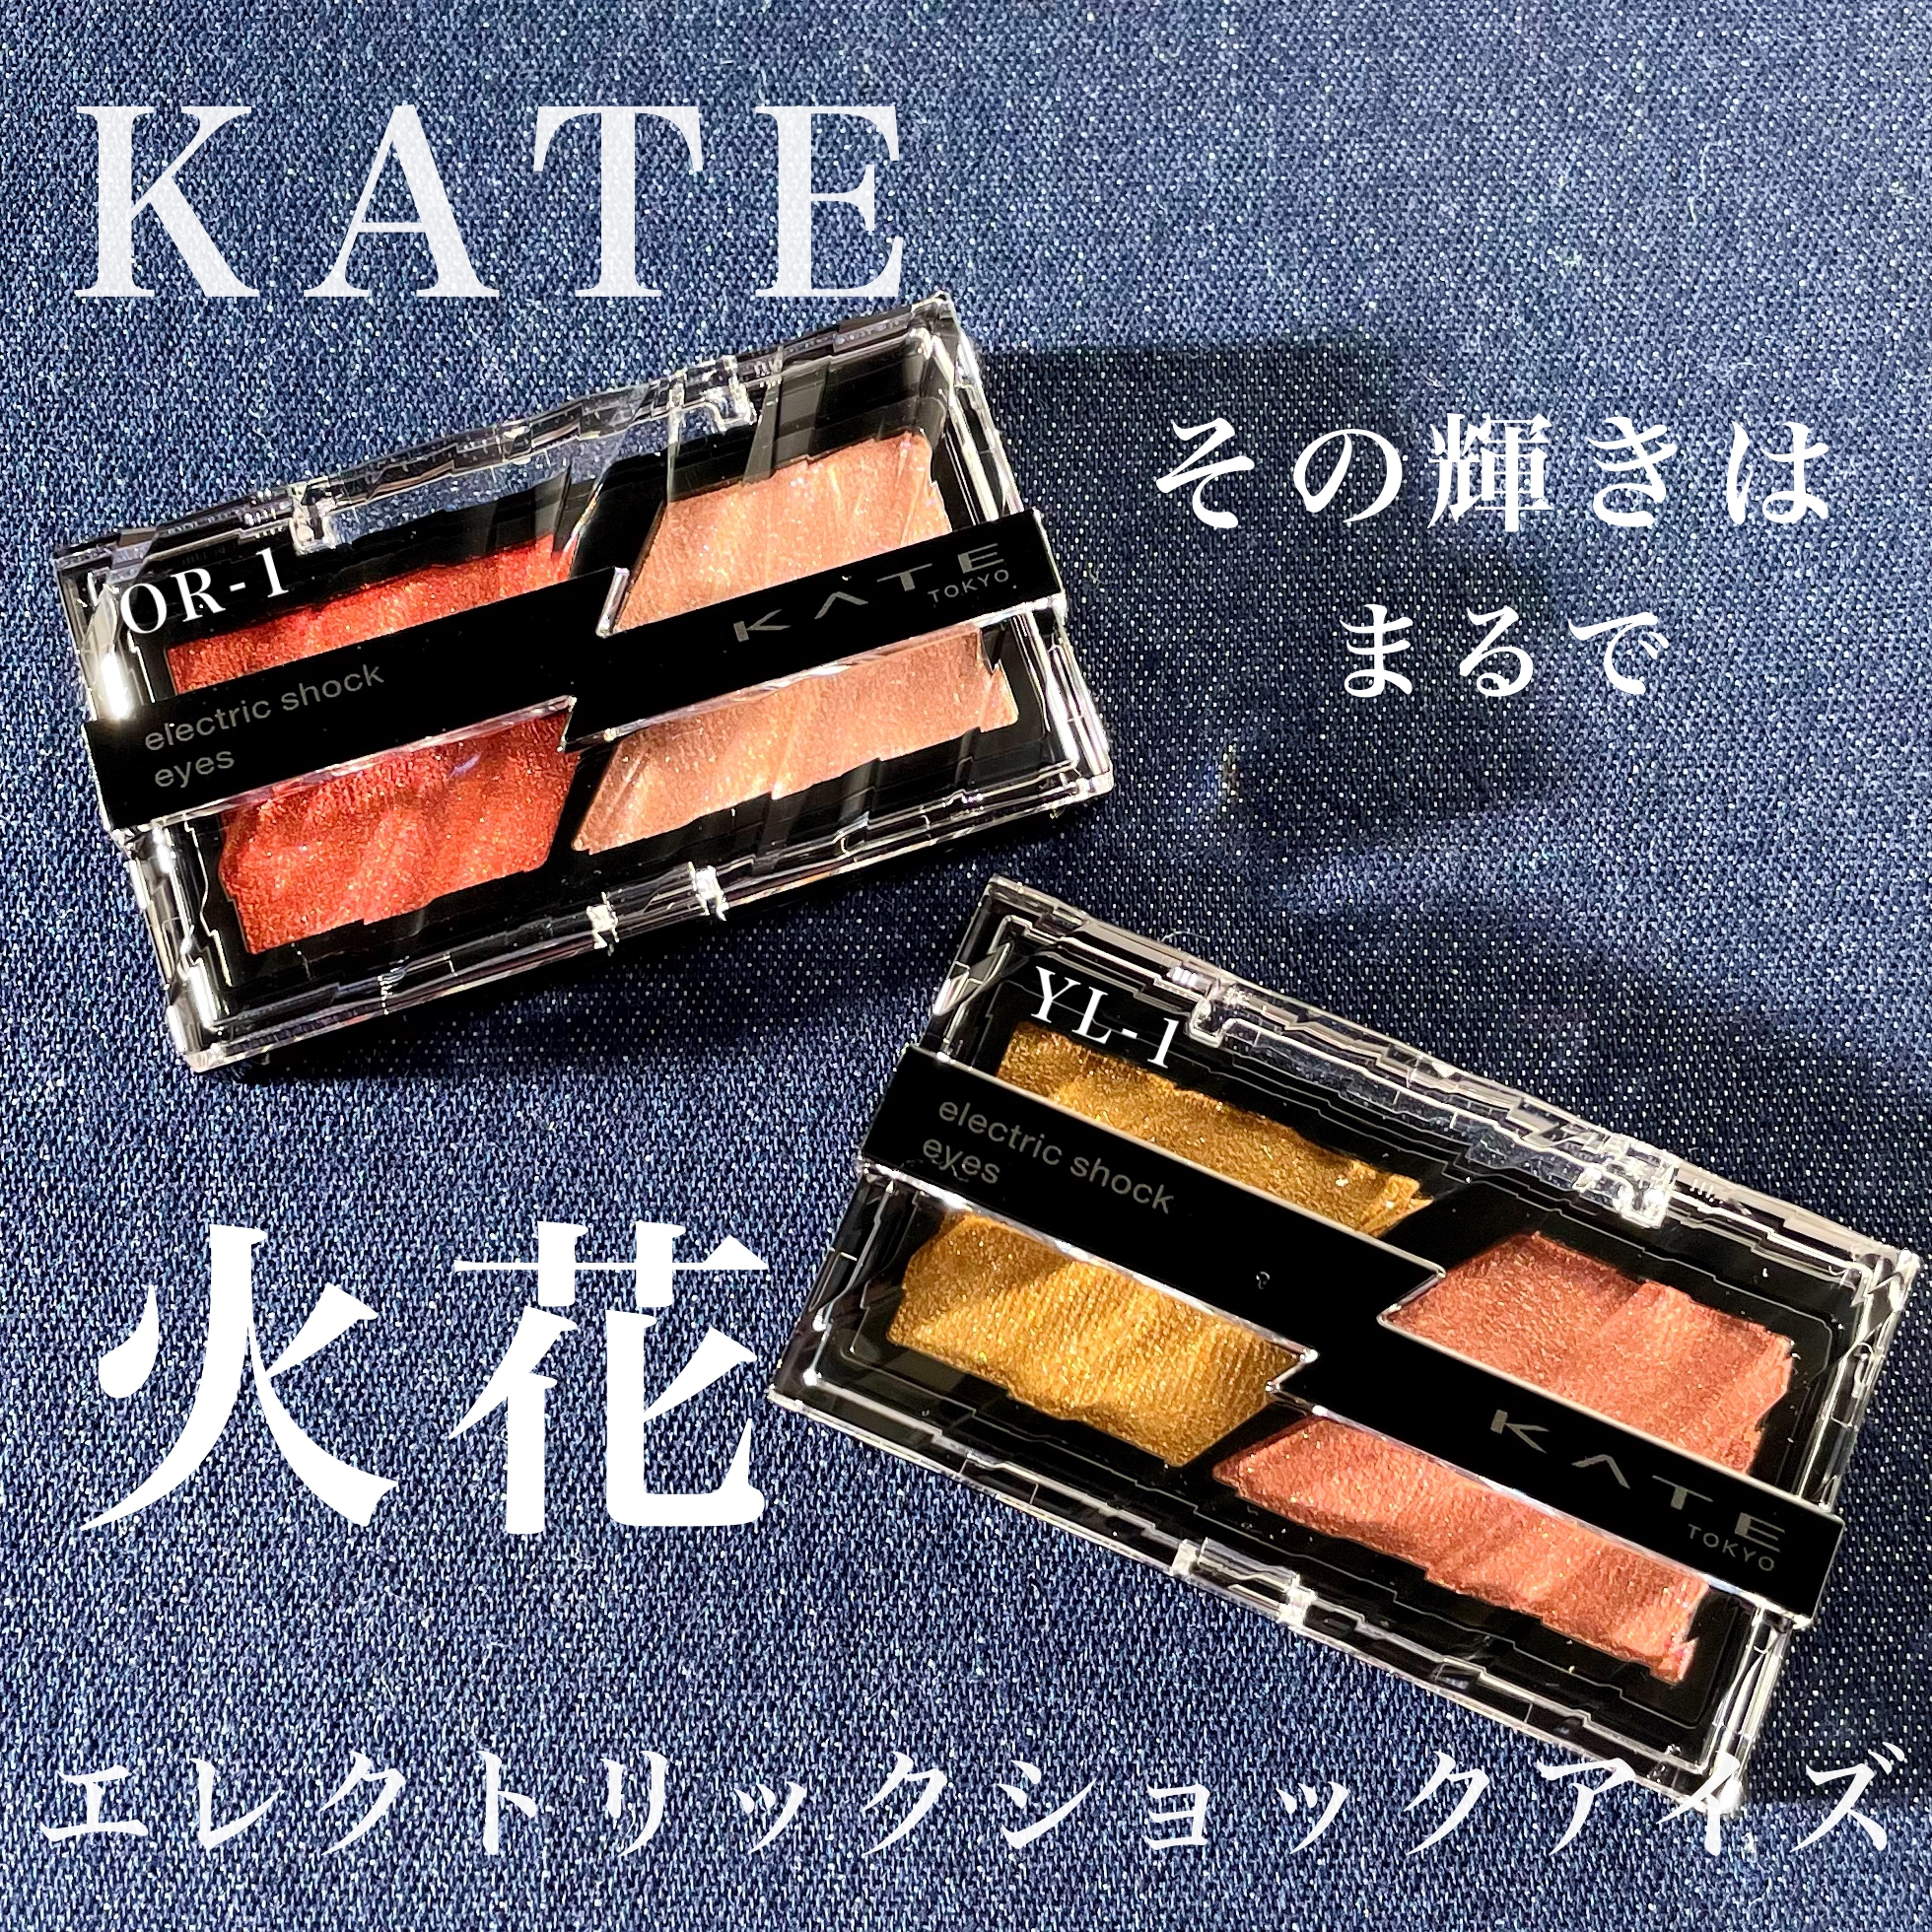 KATE(ケイト) エレクトリックショックアイズの良い点・メリットに関するKeiさんの口コミ画像1